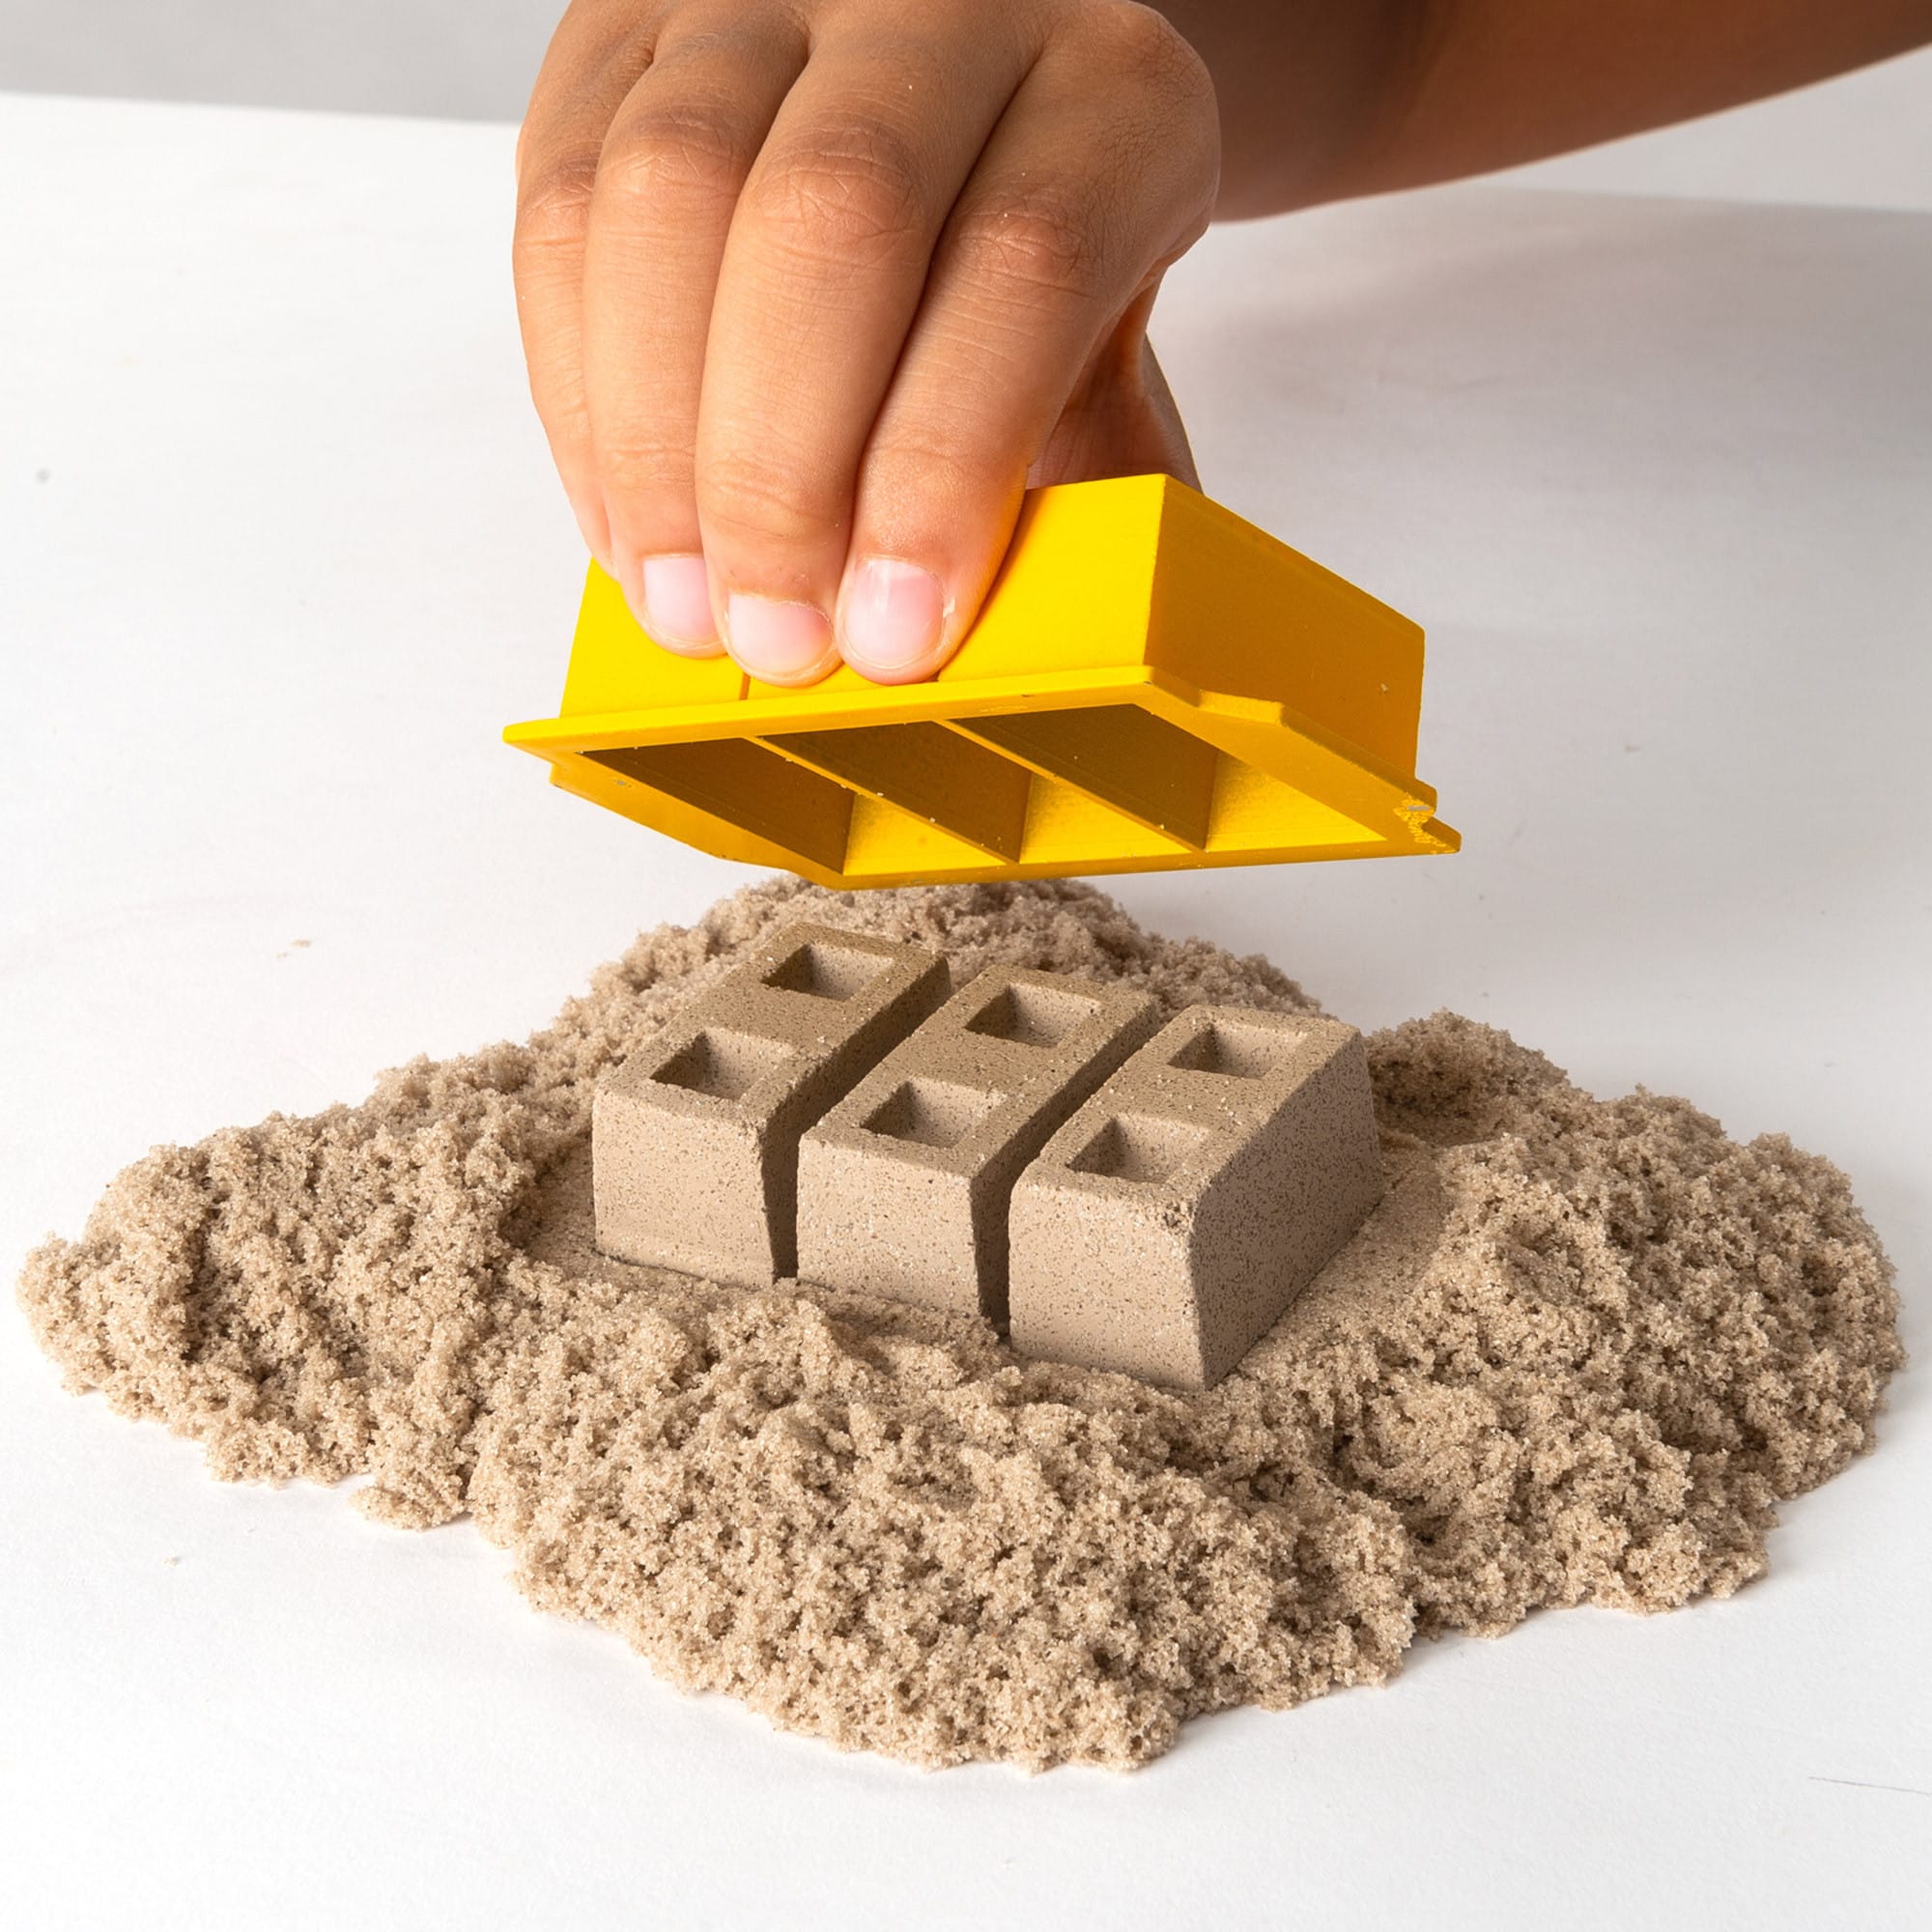 Kinetic Sand - Dig & Demolish